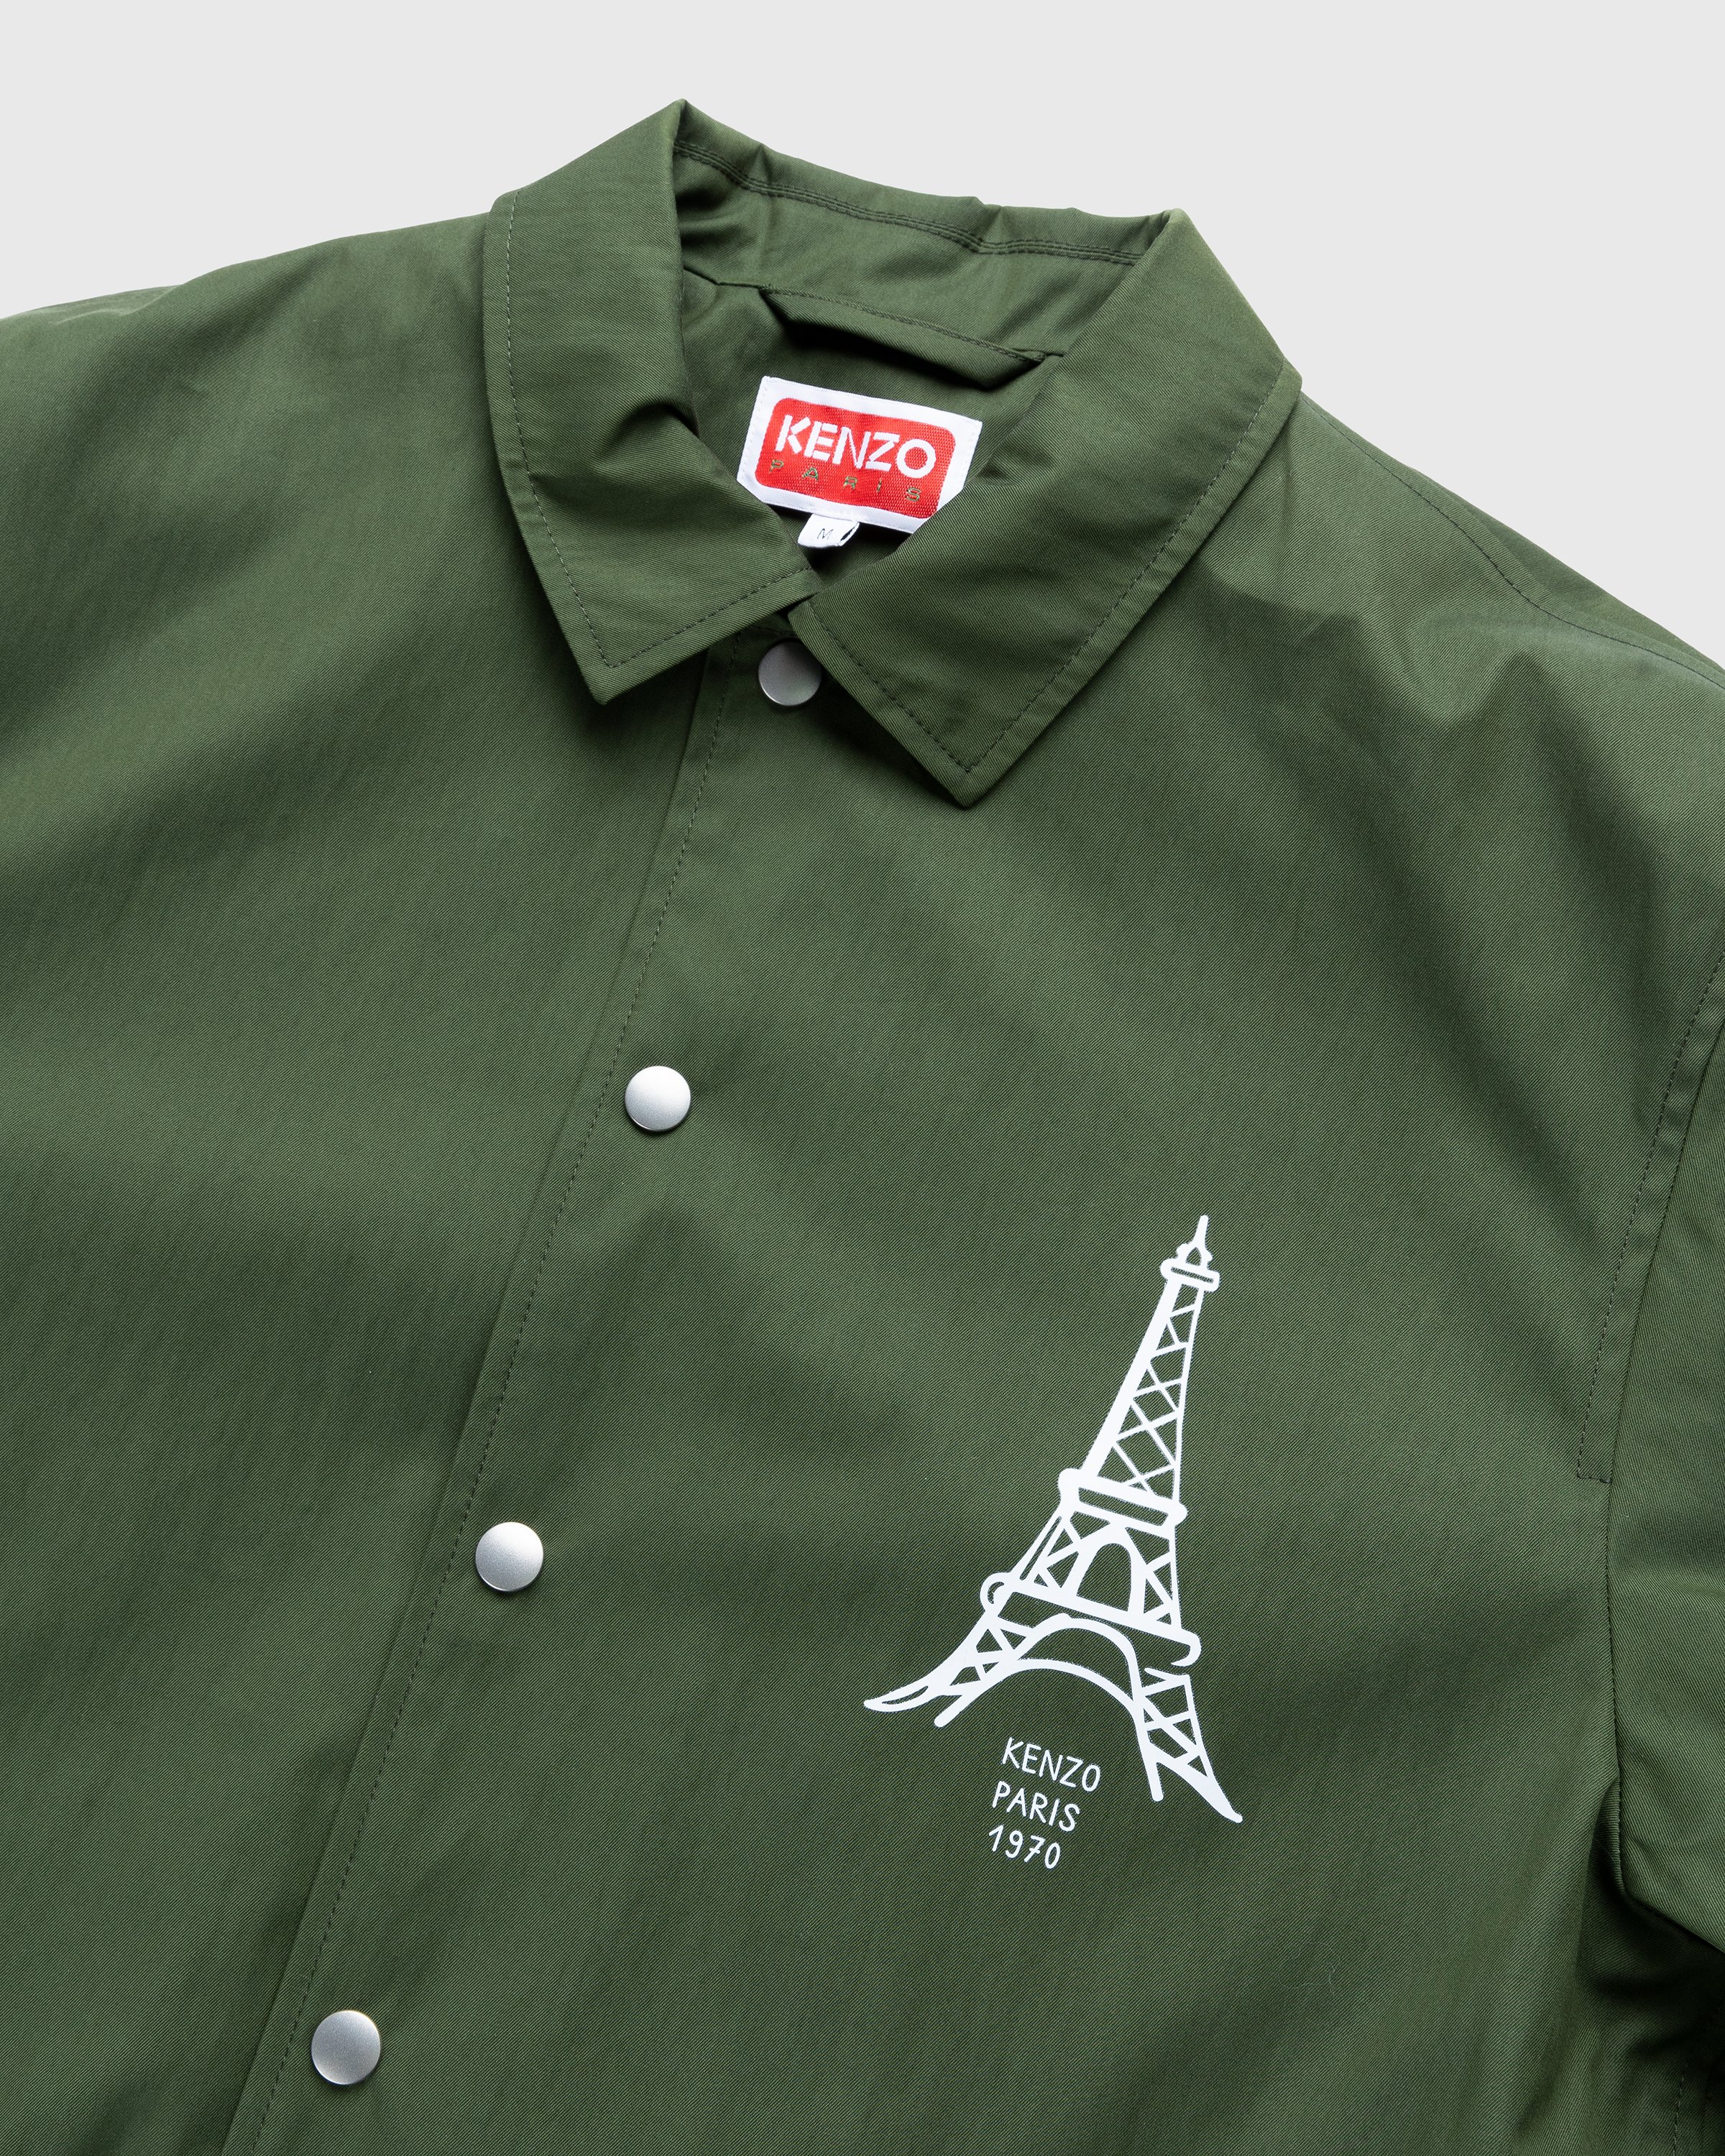 Kenzo - Bomber Jacket Dark Khaki - Clothing - Green - Image 5